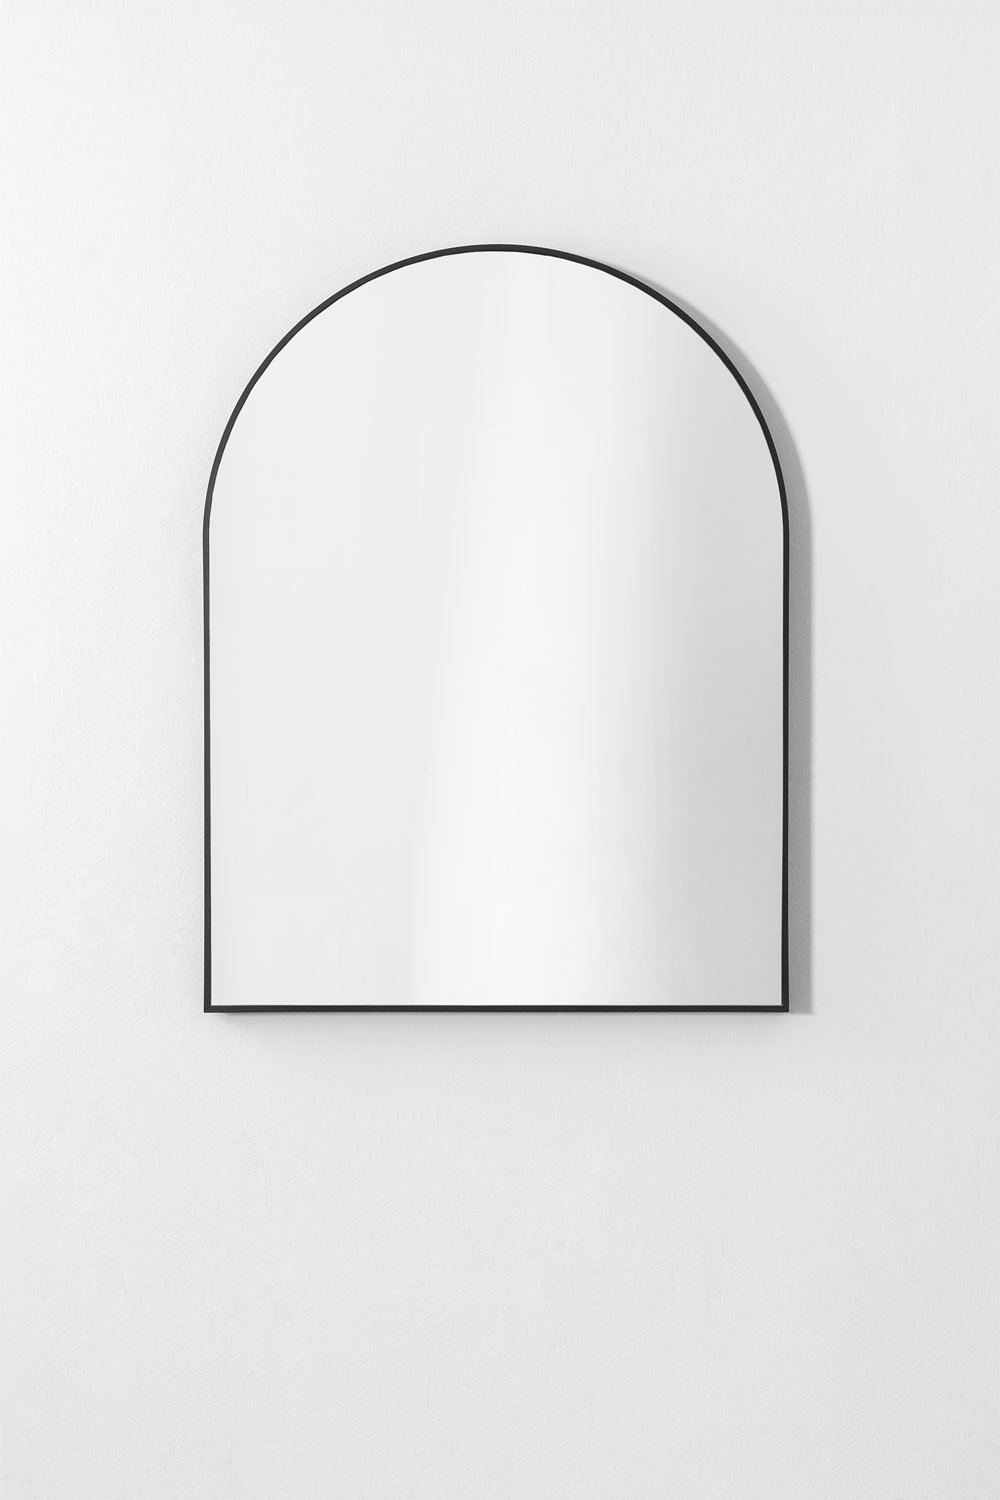 Aluminium badkamerwandspiegel (65x85 cm) Bolenge, galerij beeld 1